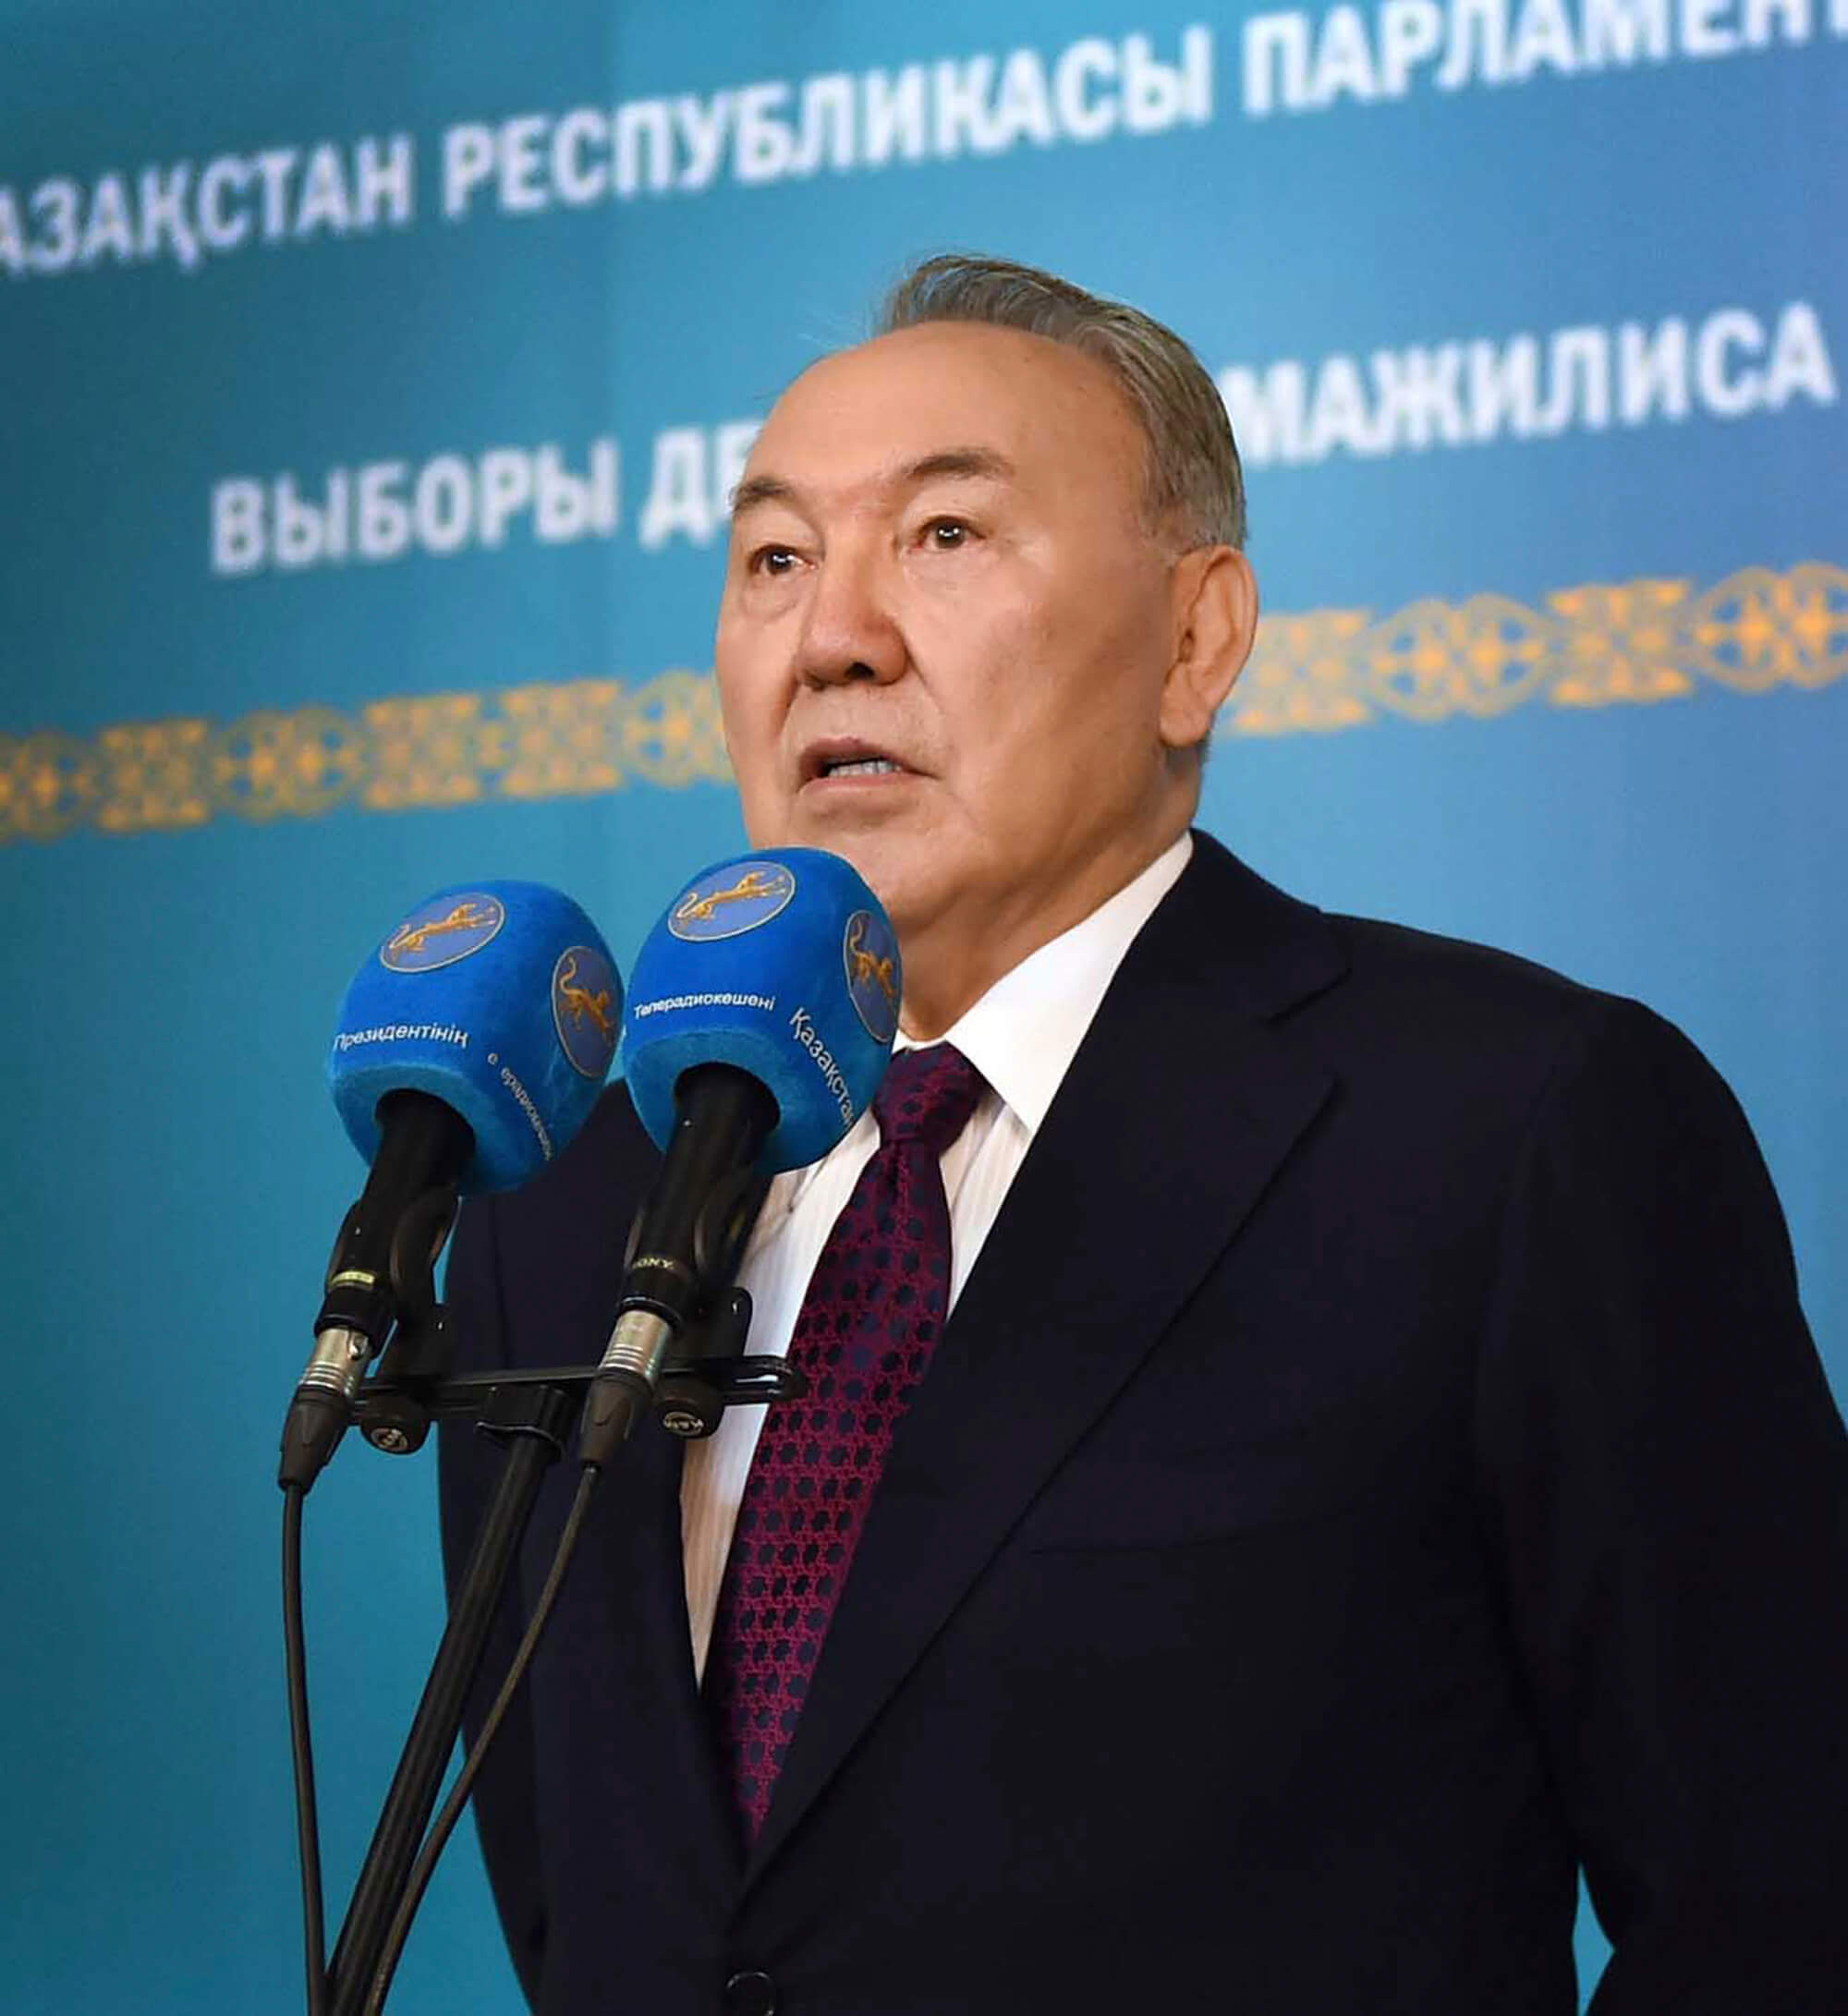 Image of President Nursultan Nazarbayev